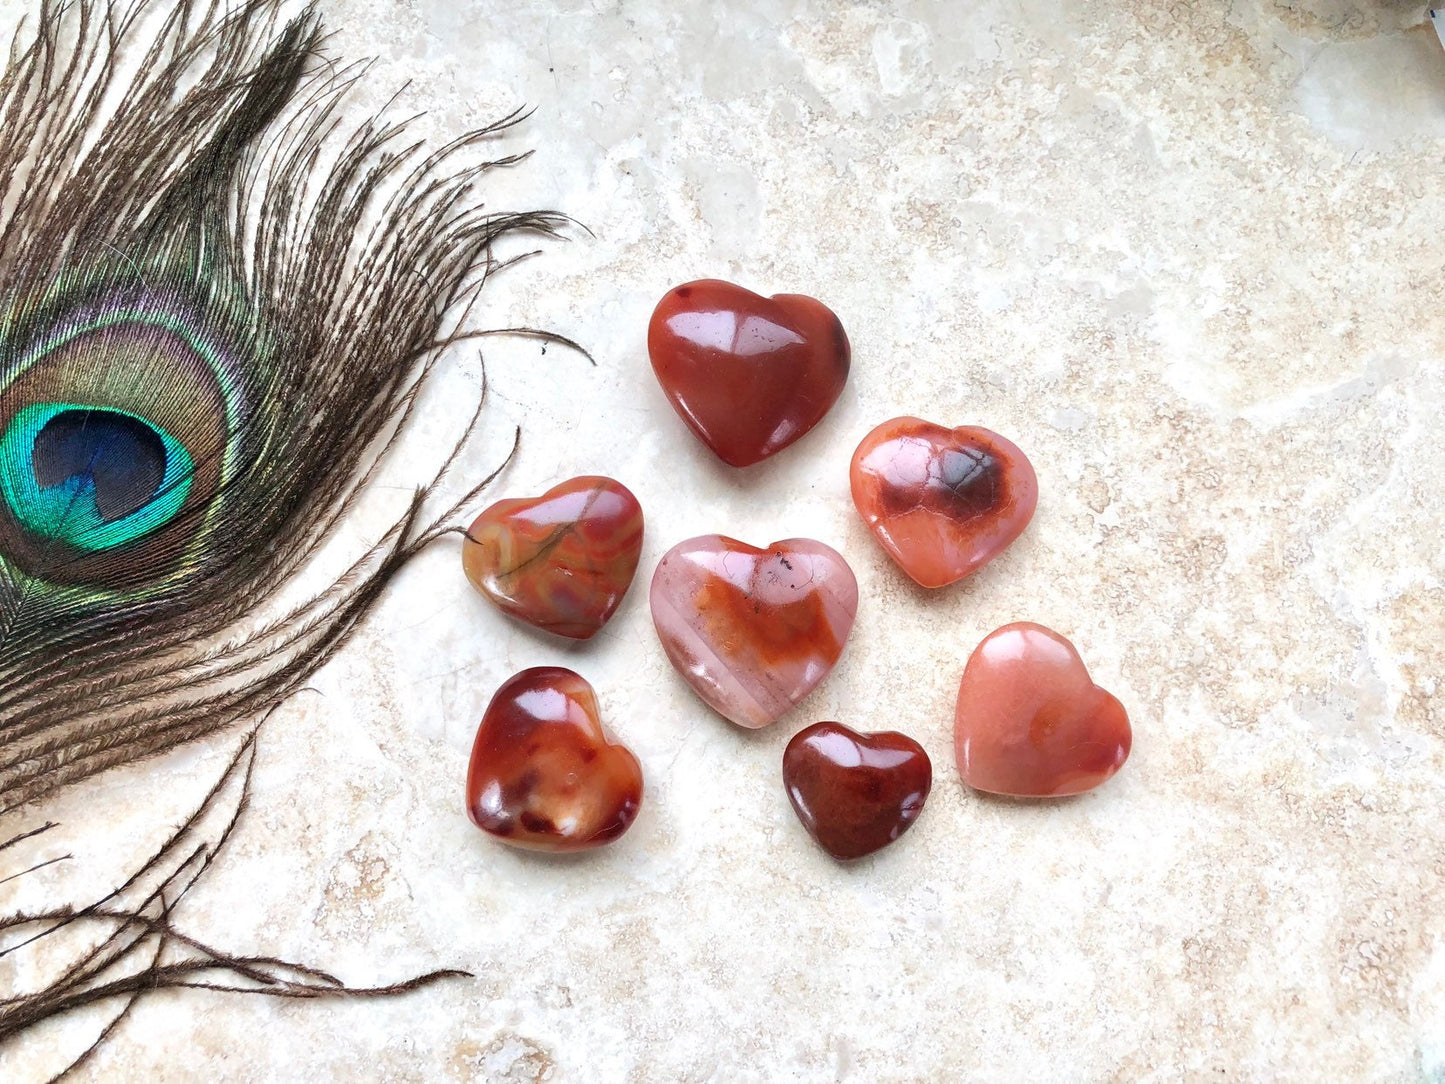 Polished Carnelian Heart - Pocket Stone Puff Heart